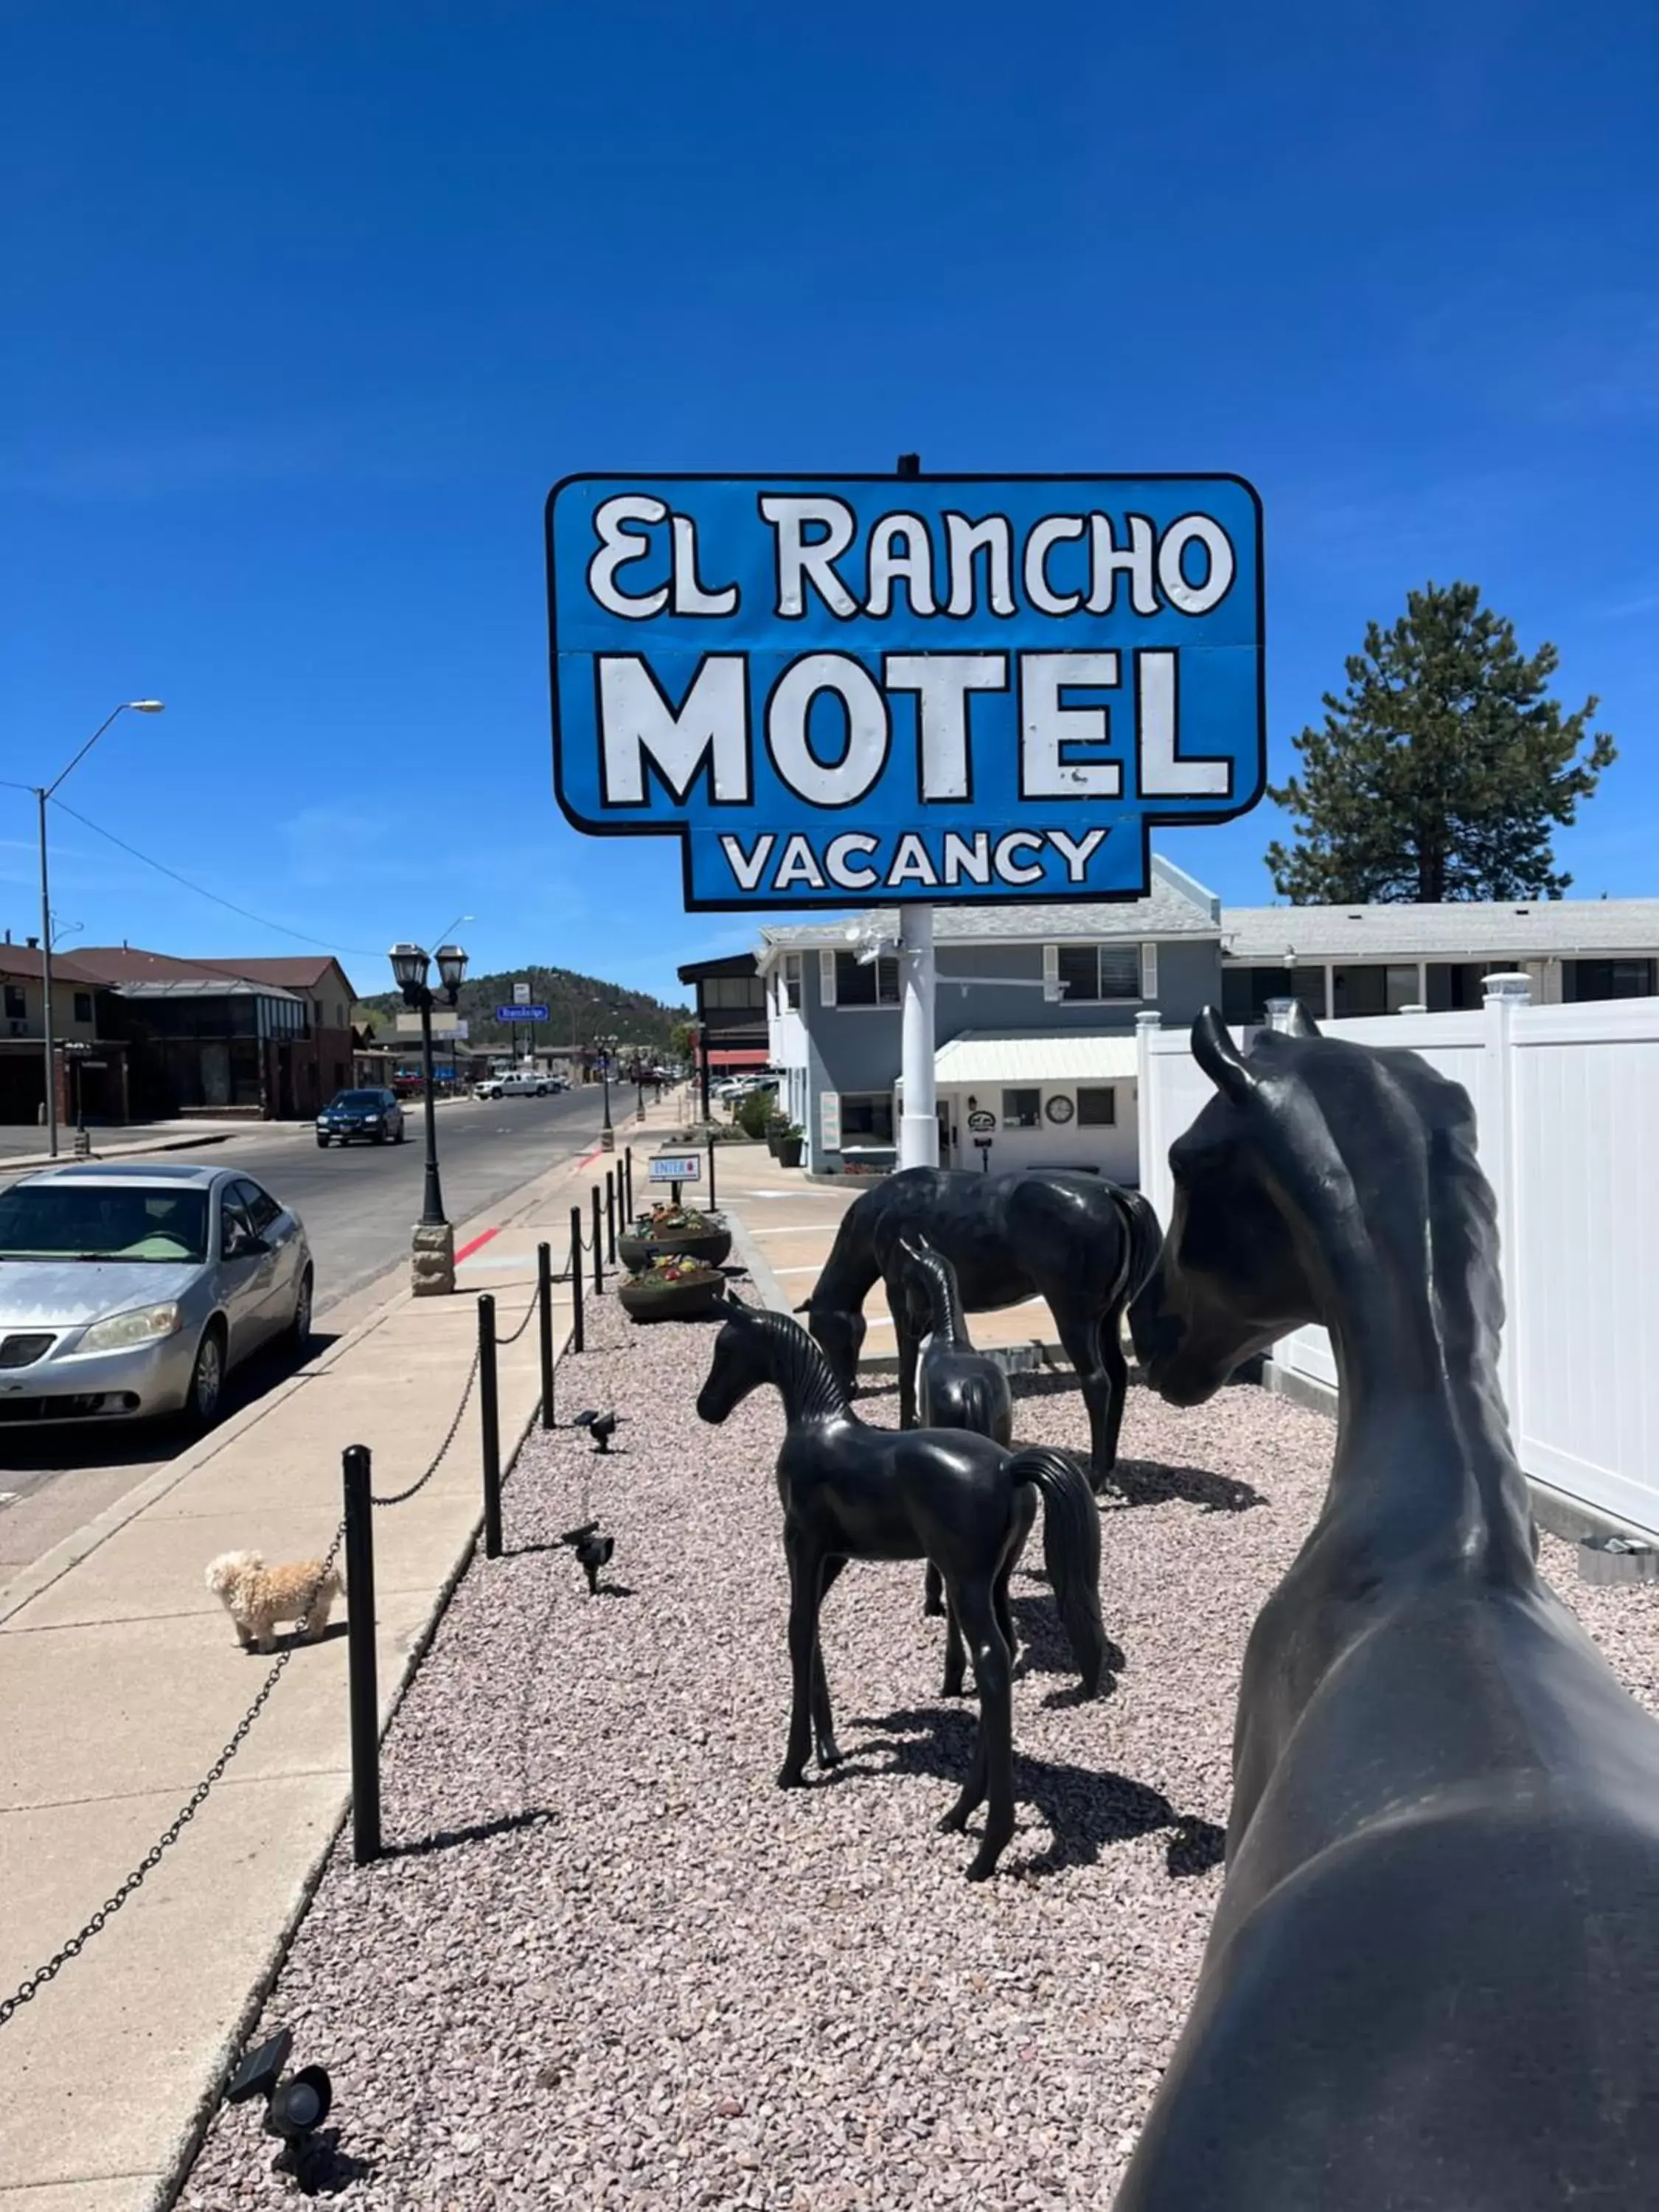 Day in El Rancho Motel